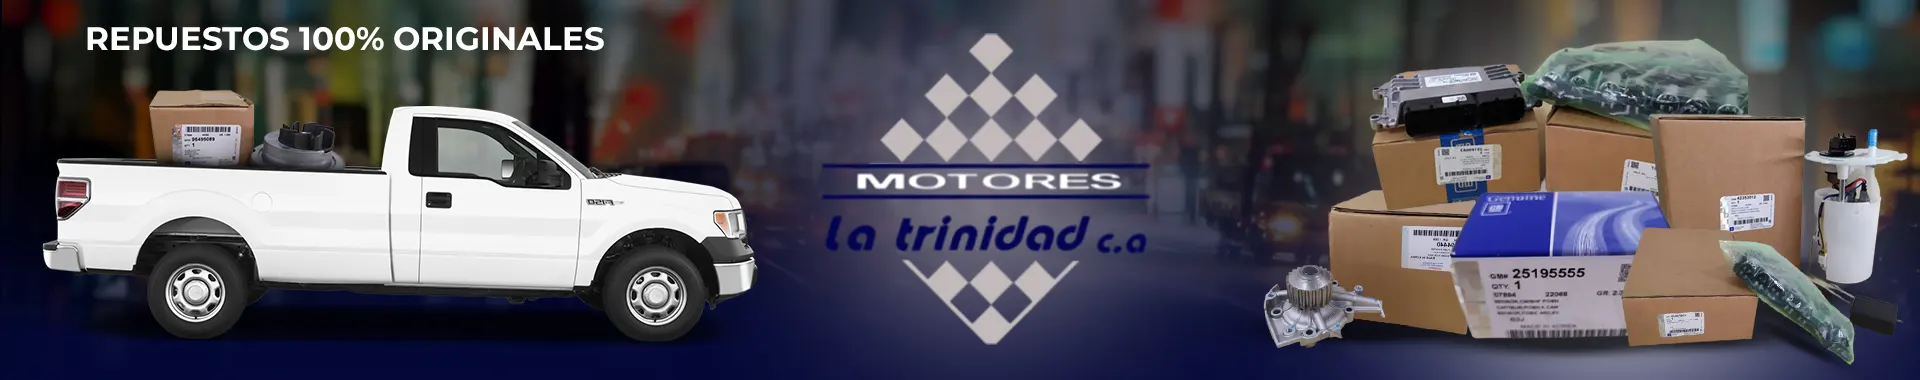 Imagen 3 del perfil de Motores La Trinidad - Repuestos